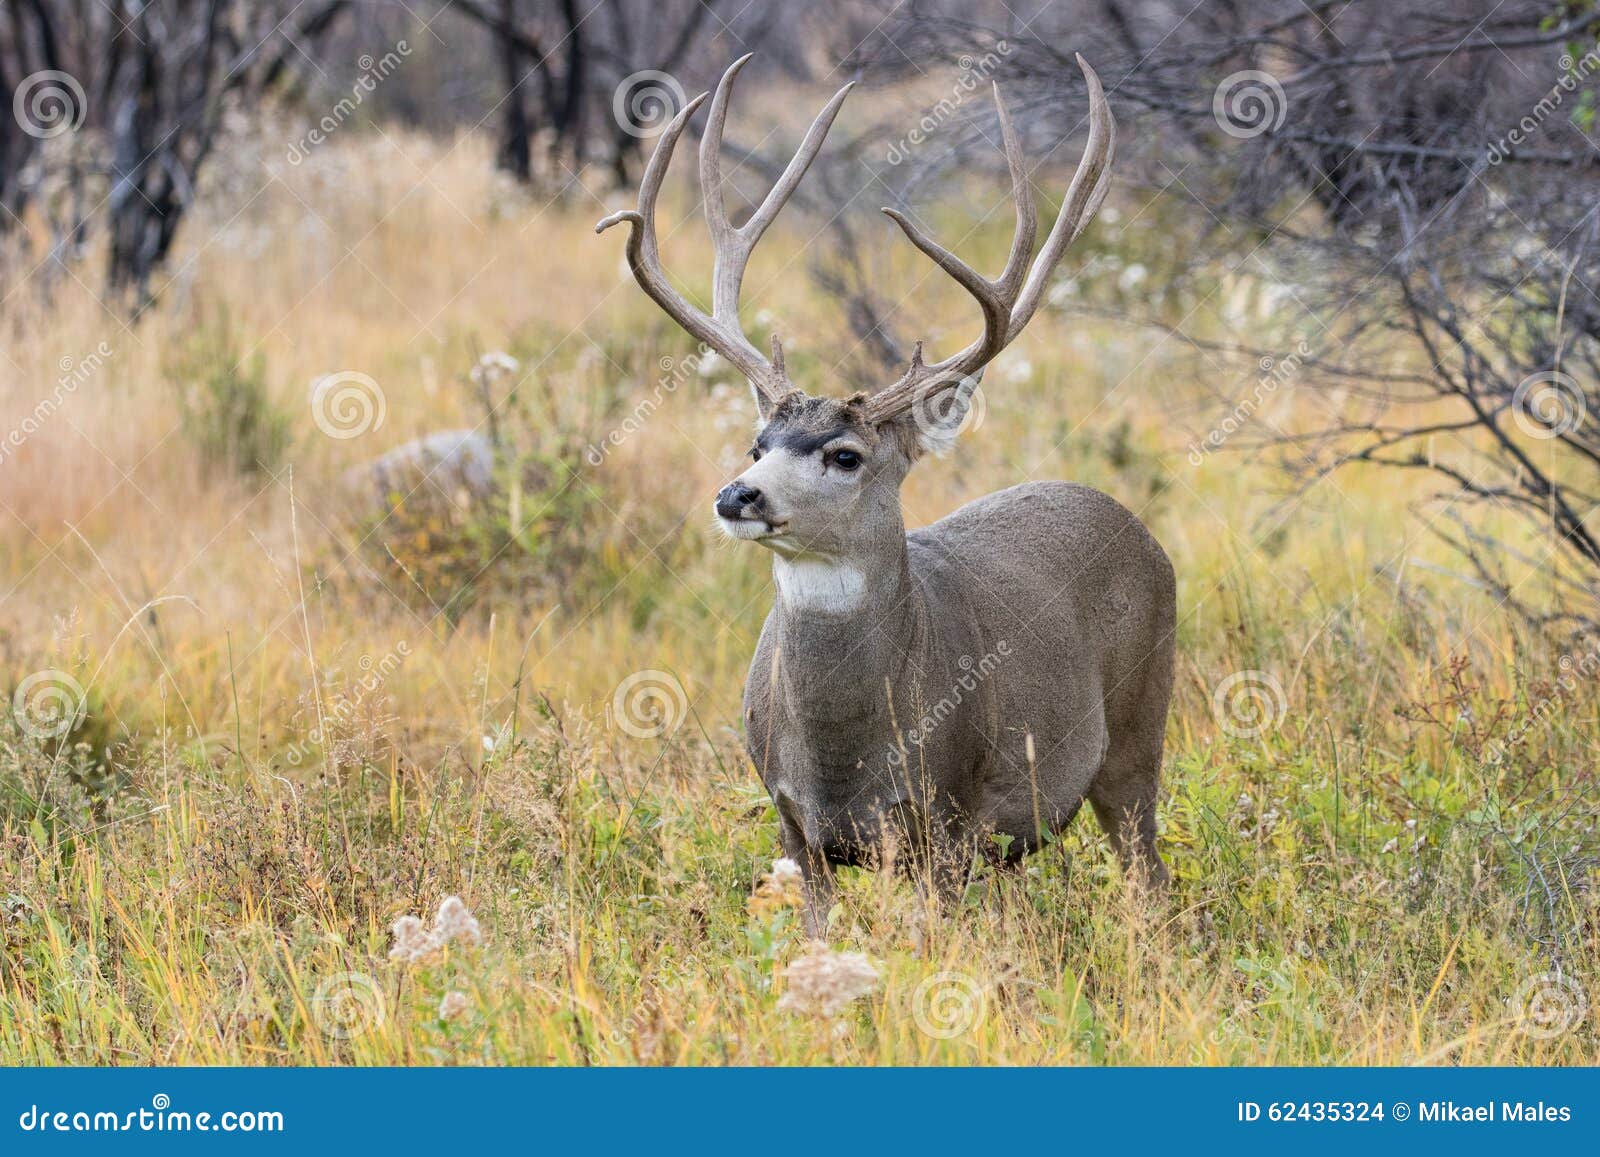 big mule deer buck in rut